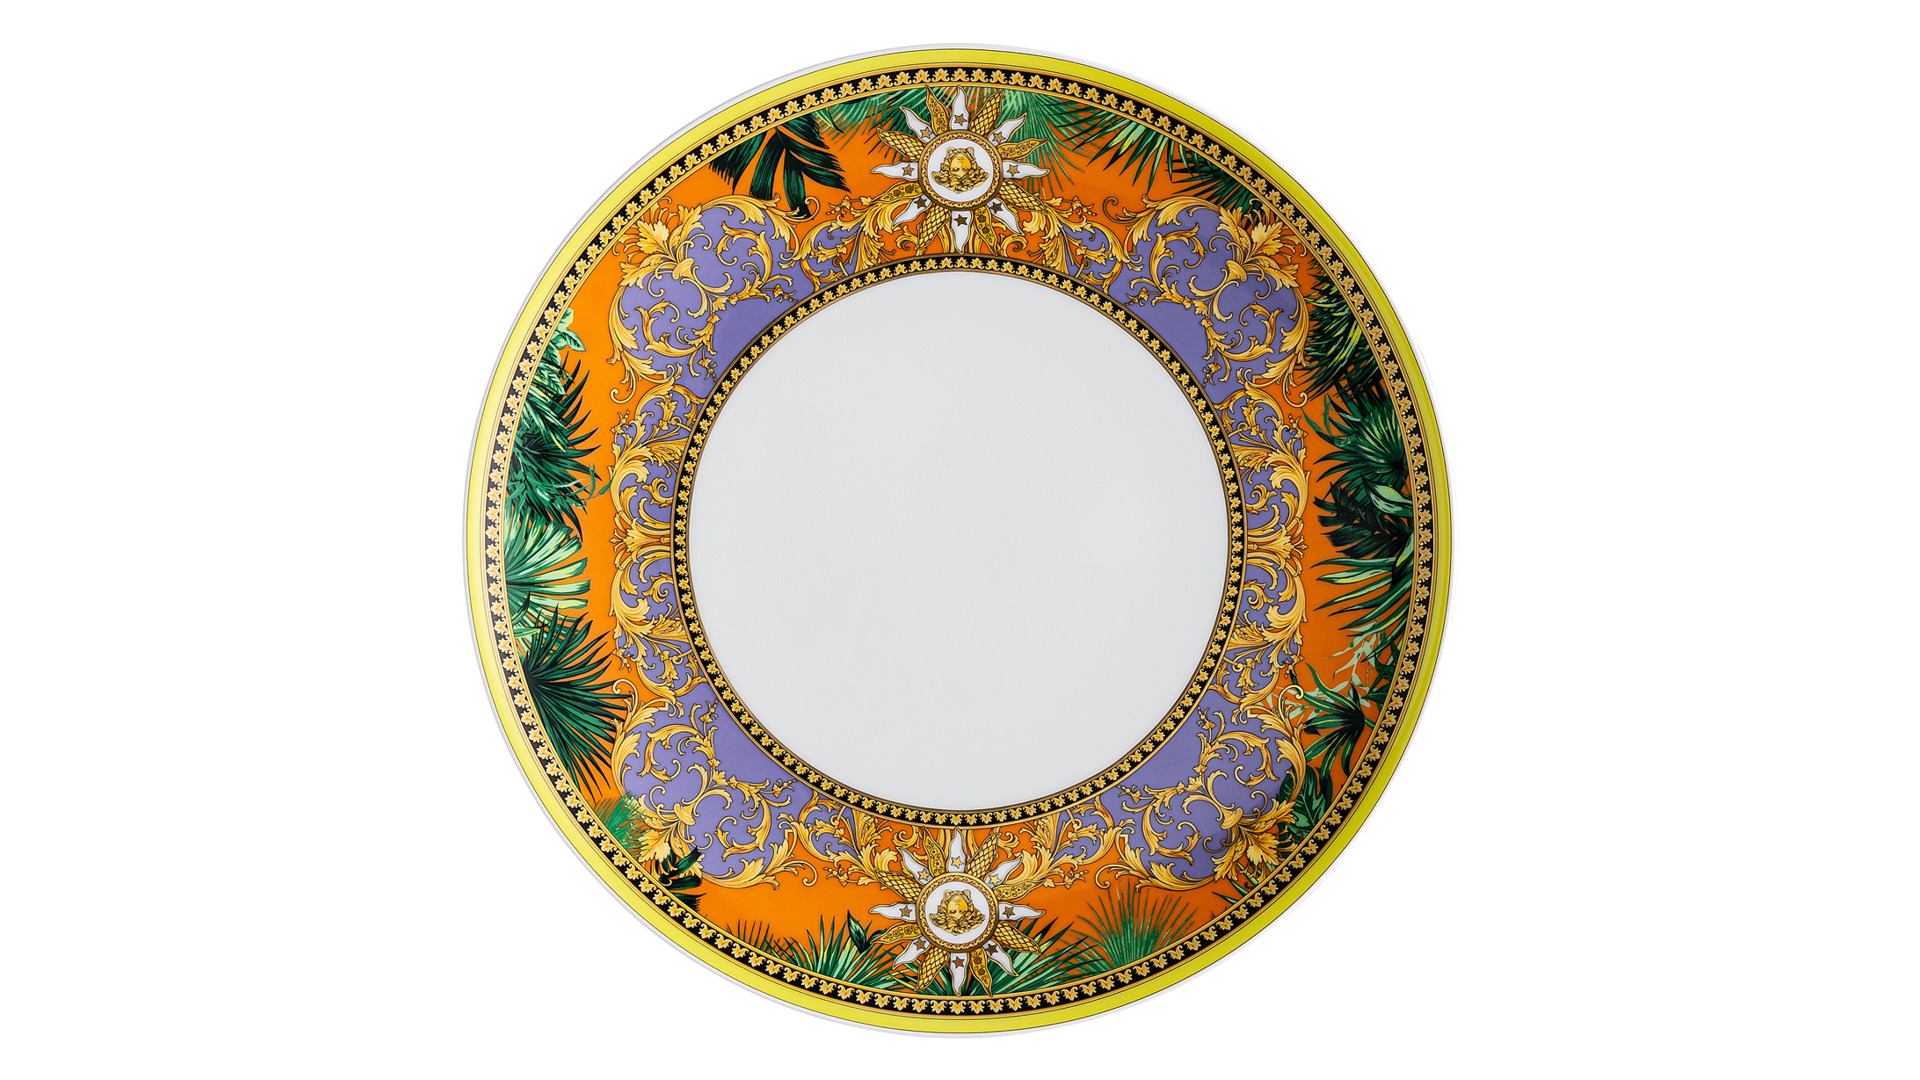 Тарелка обеденная Rosenthal Versace Мир джунглей 28 см, фарфор